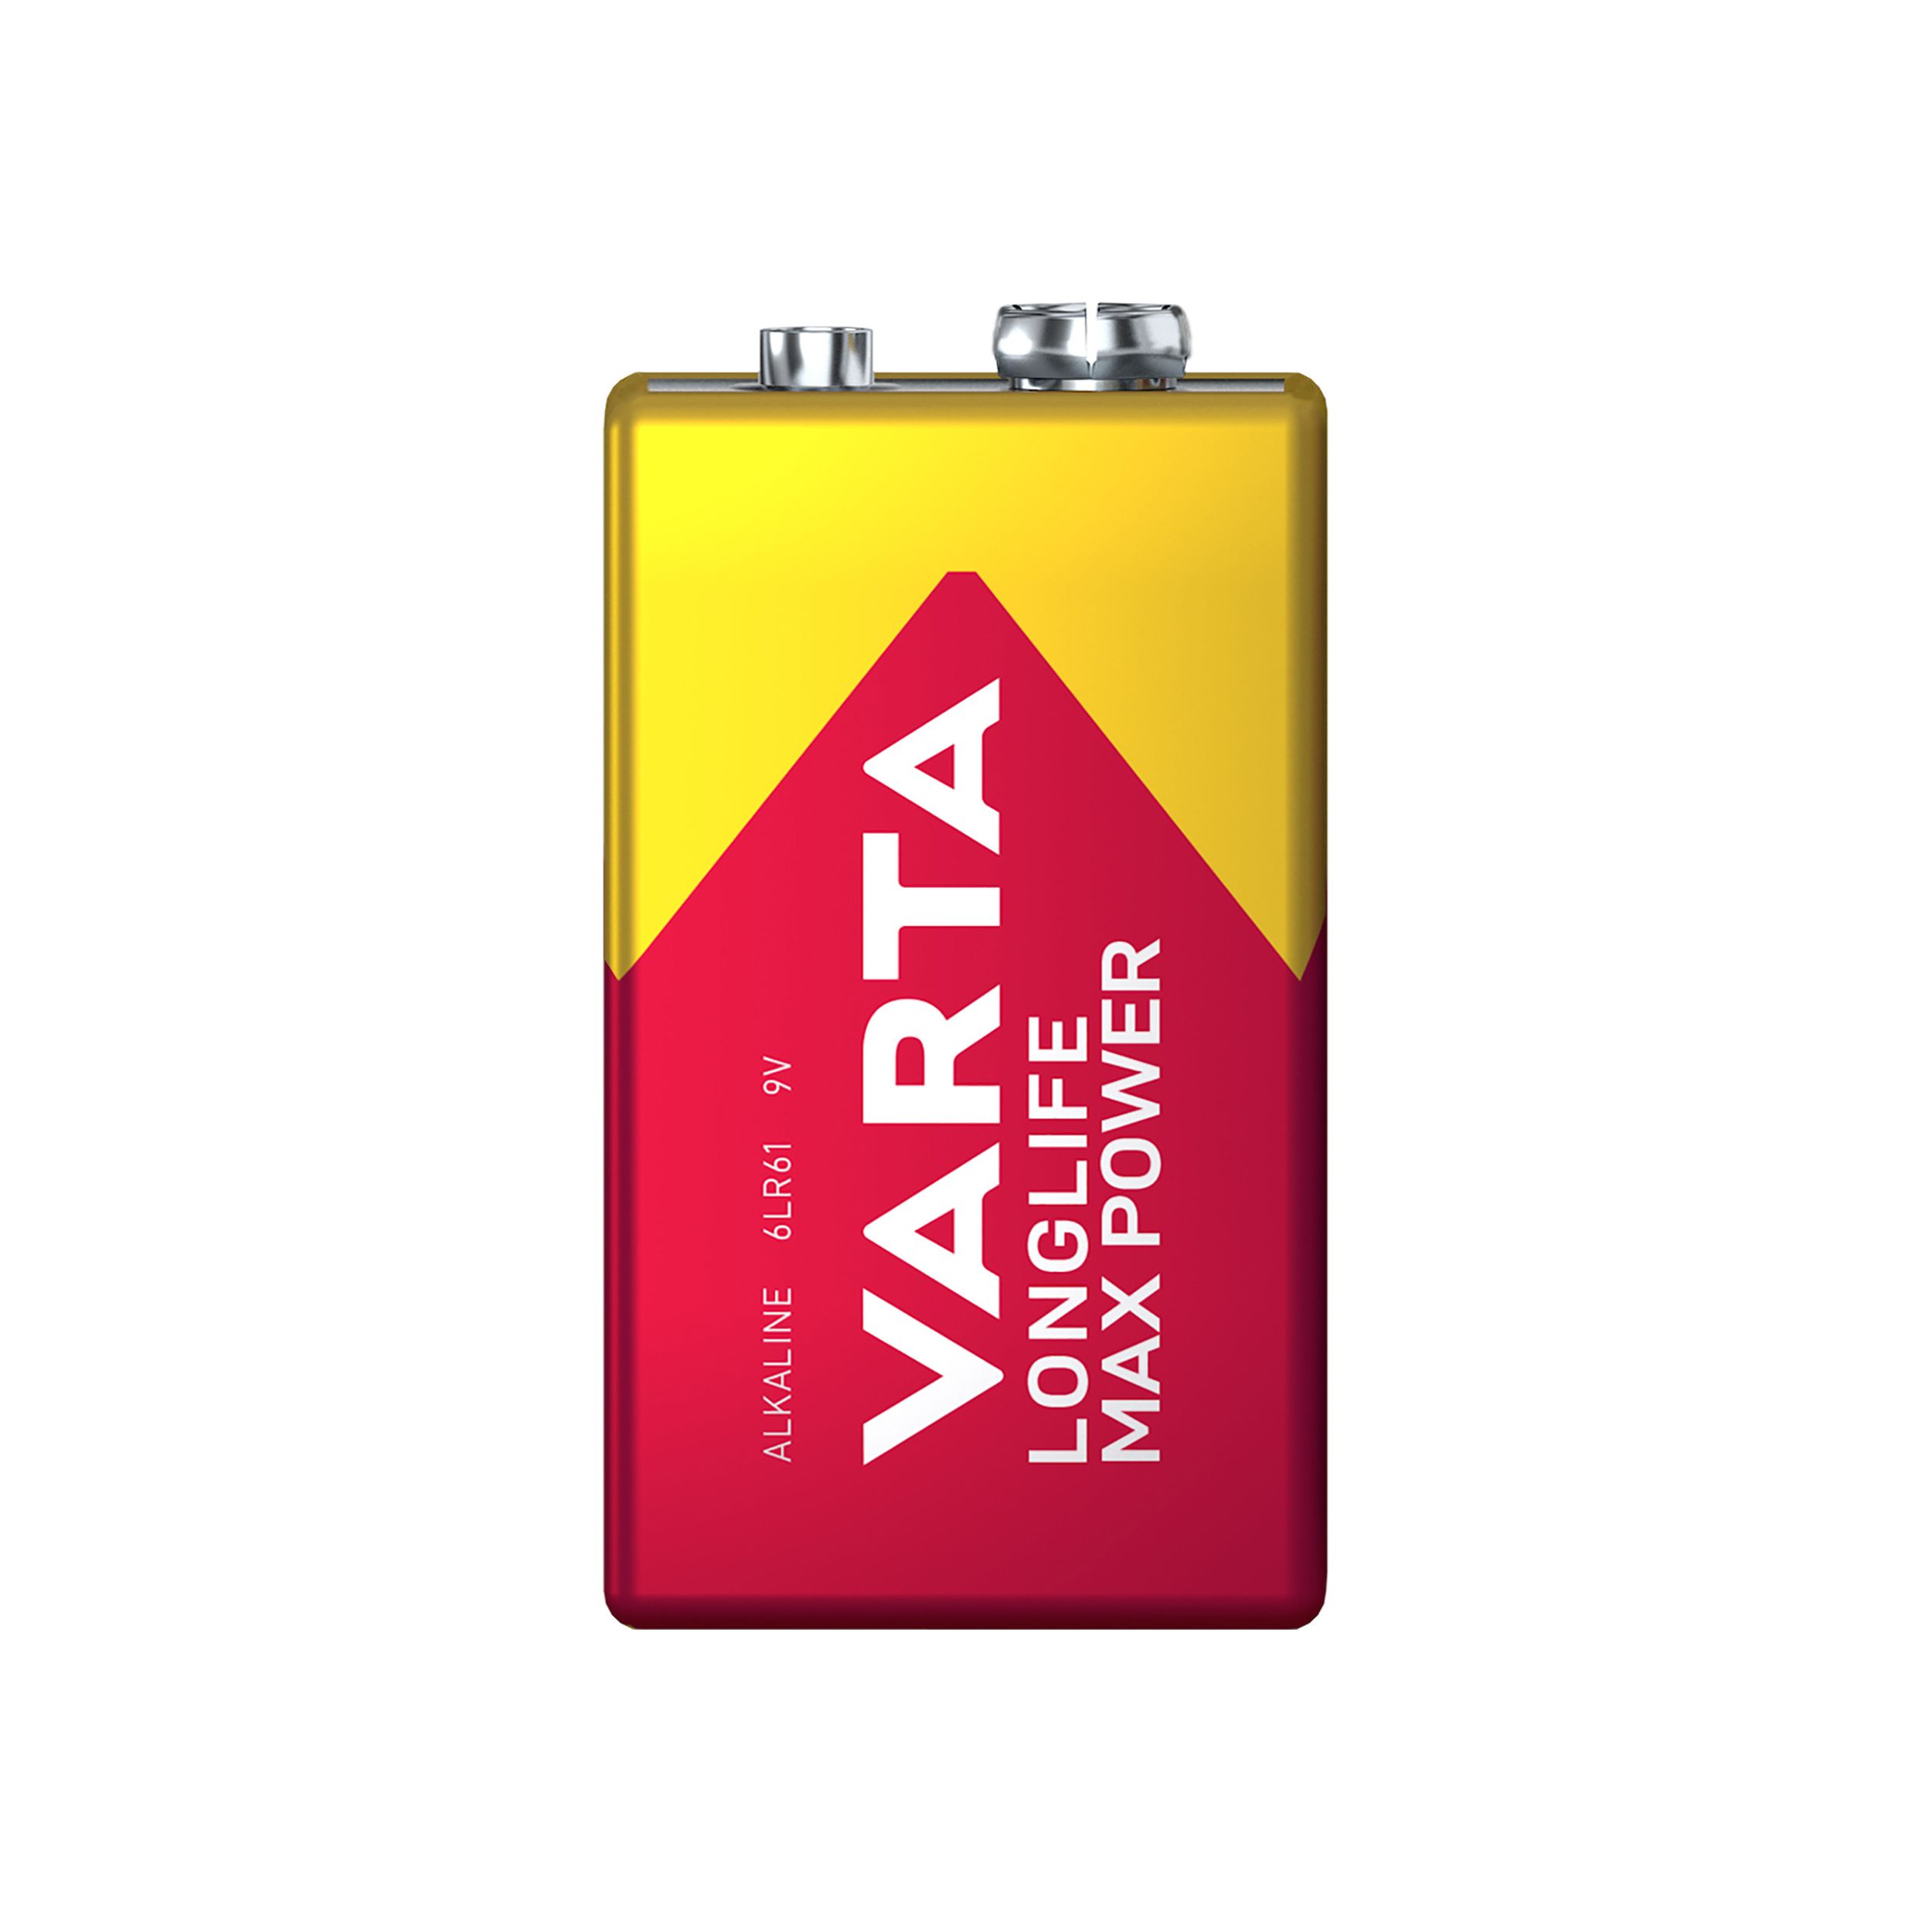 Varta Longlife Max Power 9V Battery